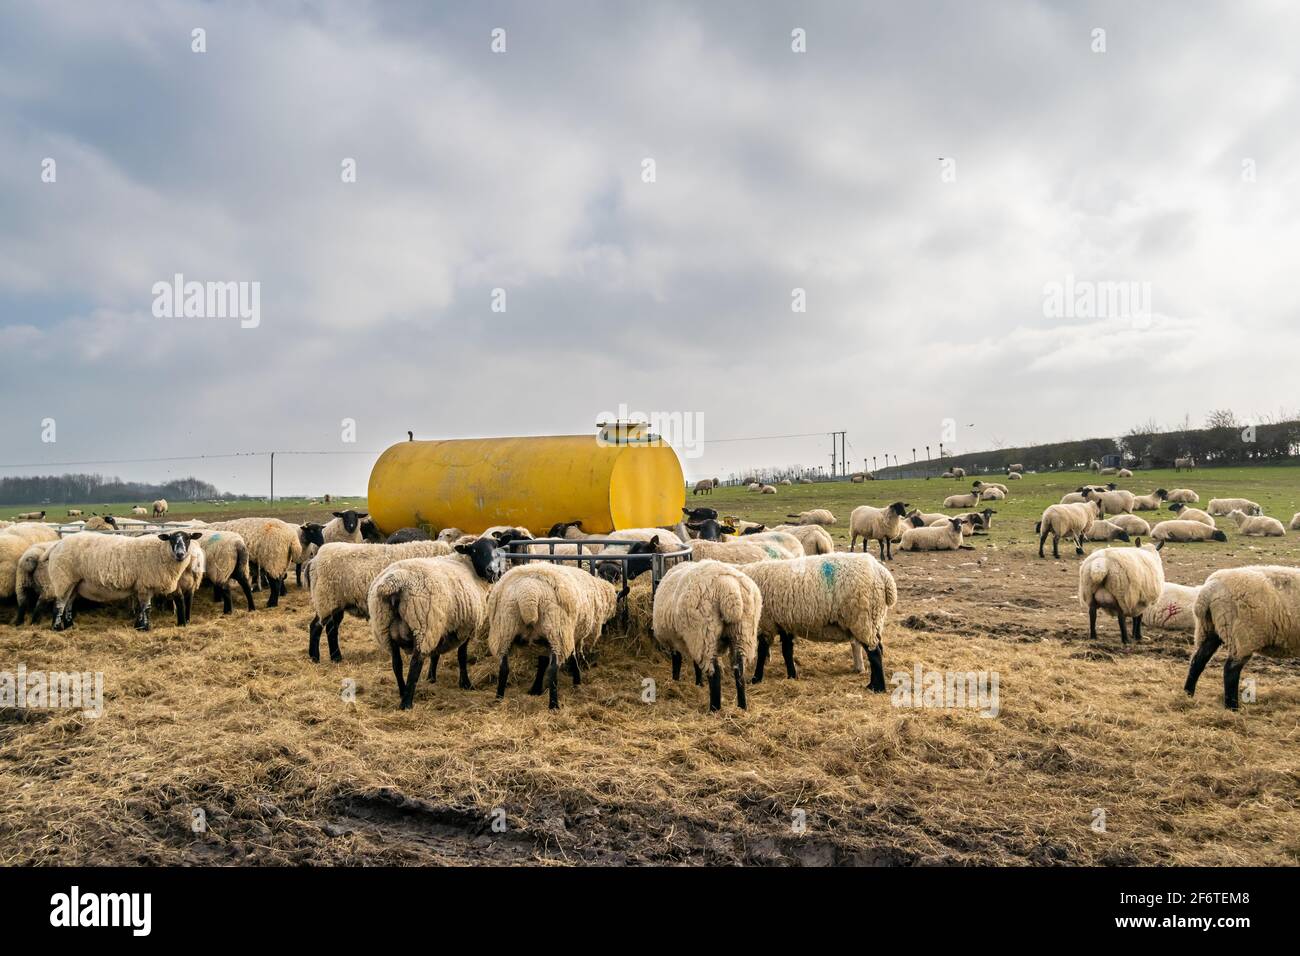 Viele Lämmer fressen aus dem Metallfutterhäuschen neben einem großen gelben Metallwassertank im offenen Gras-Ackerland, eine Gruppe von Tieren während der Fütterungszeit Stockfoto